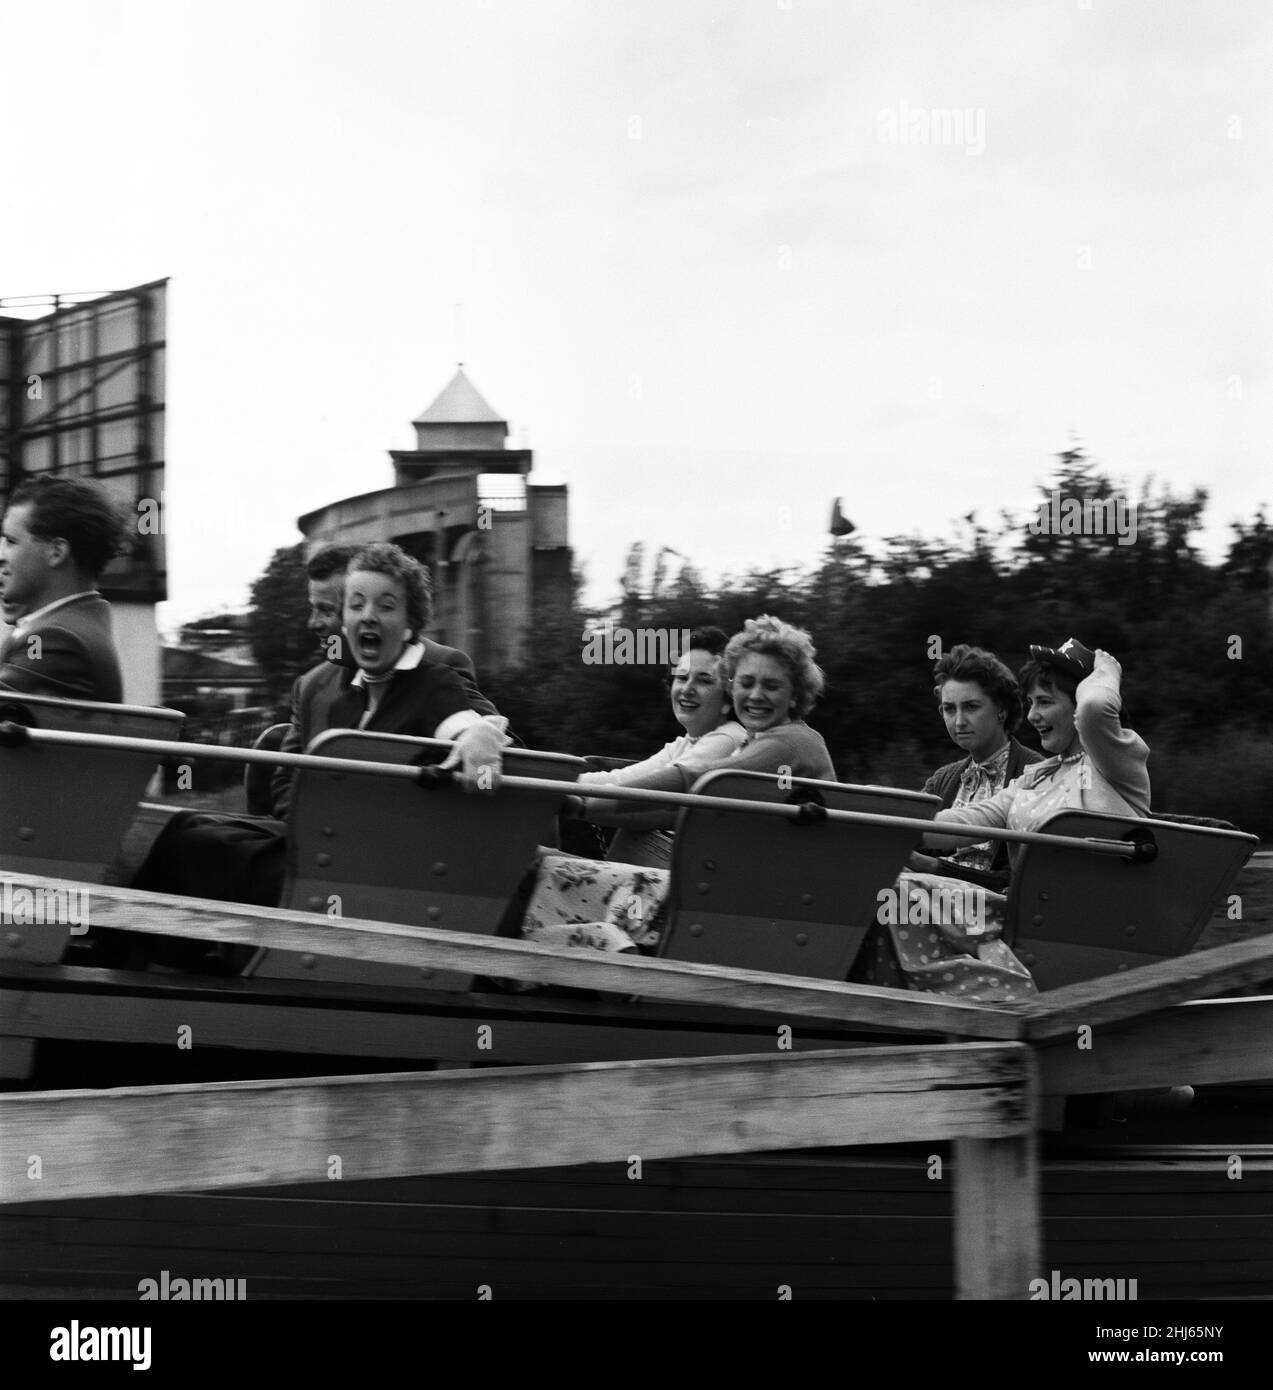 Hunderte von Whitsun-Ausflüglern nach Southend-on-Sea, Essex, fanden es zu kühl und unruhig, um ihre Zeit an den Stränden zu verbringen. So hat man sich für den Kursaal - den bekannten Vergnügungspark - gemacht. Die Dodgems und Kreisverkehre waren sehr beliebt, aber der Big Dipper, die Waterchute und die Rock and Roll Tubs trugen die meisten der einfachen Ausflügler. 9th. Juni 1957. Stockfoto